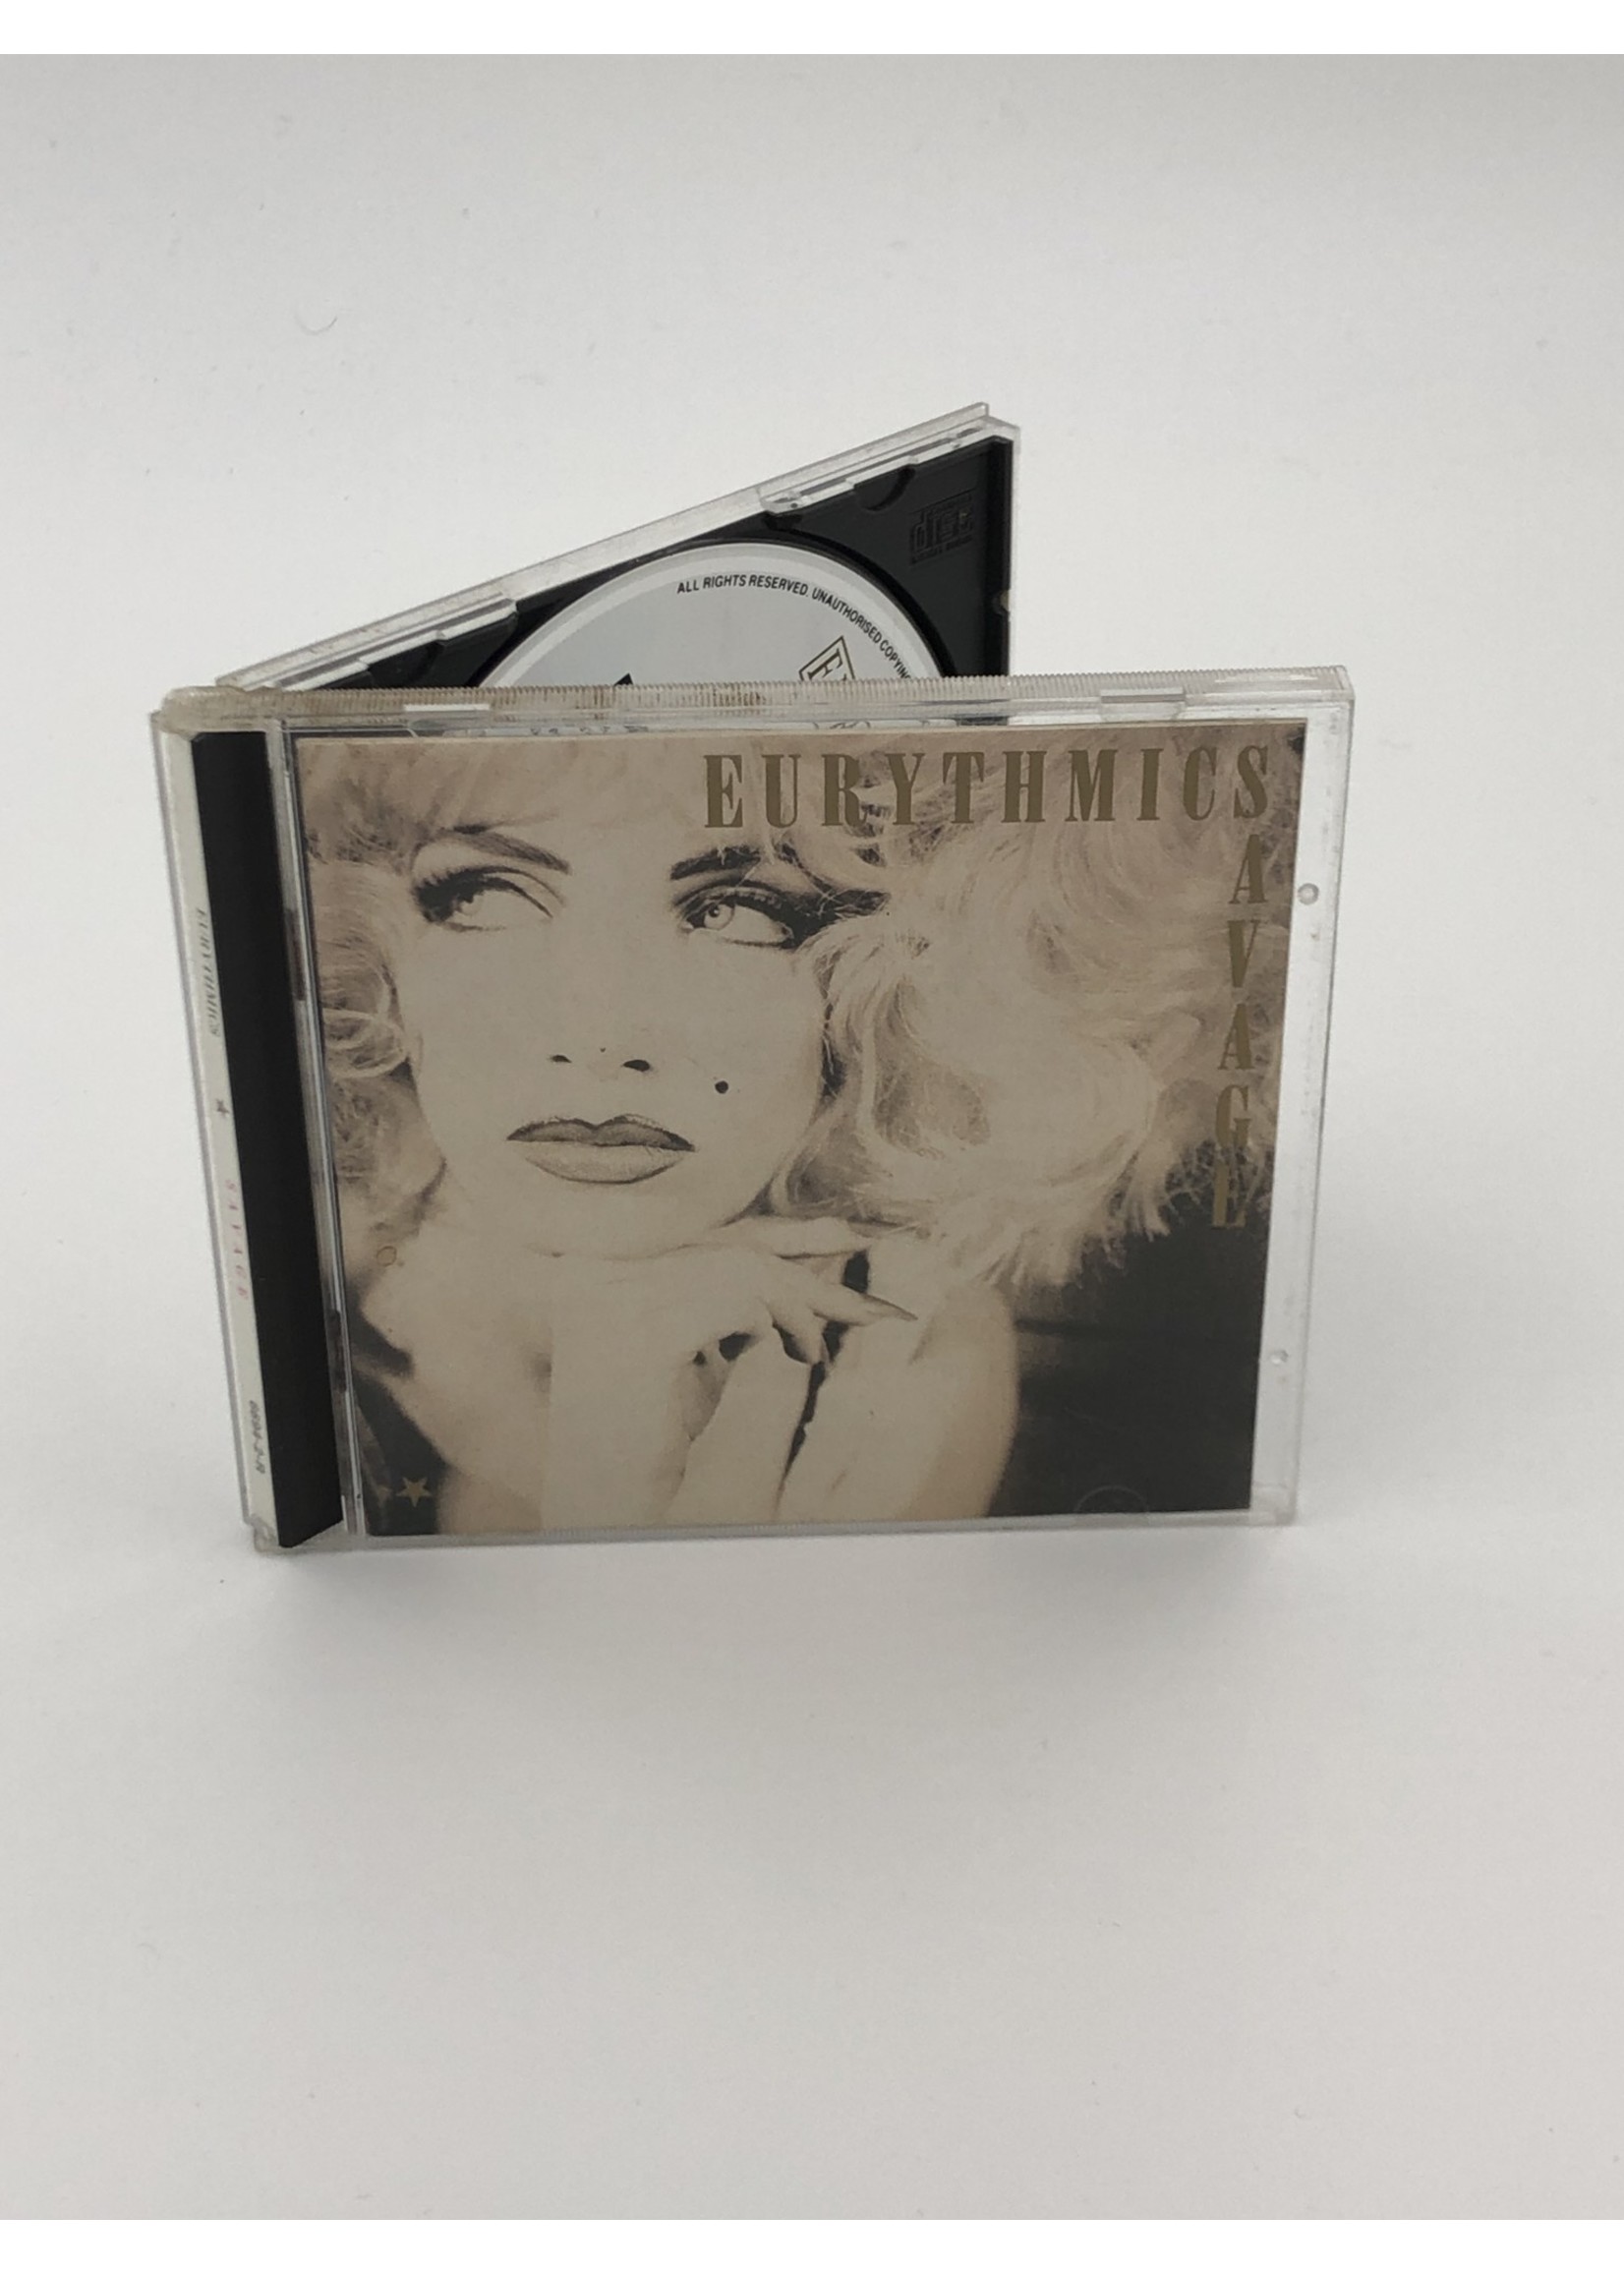 CD Eurythmics: Savage CD